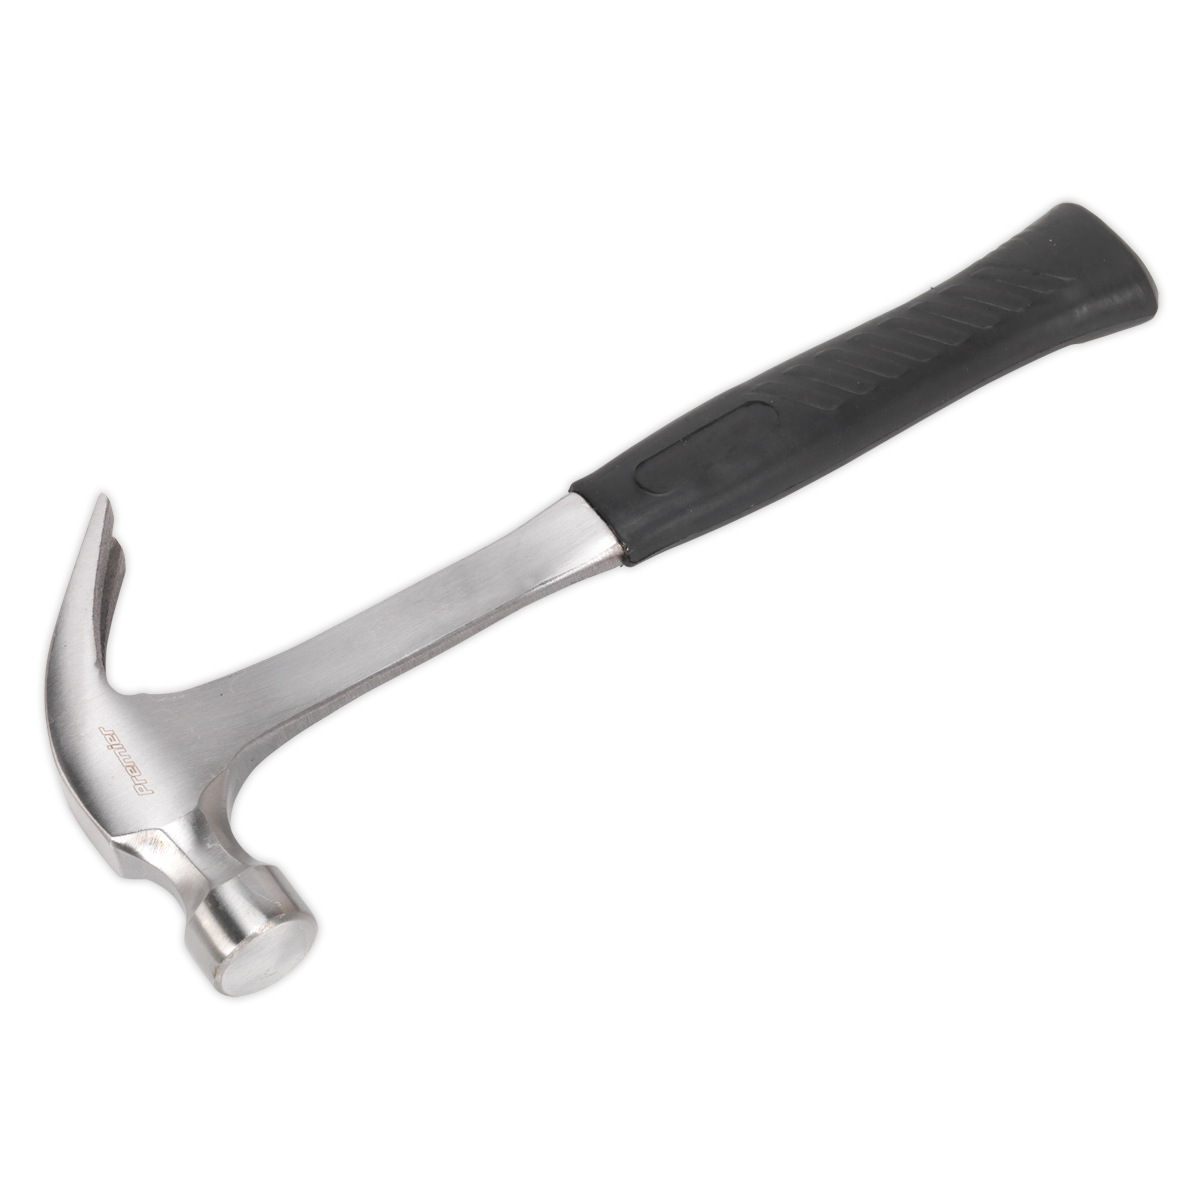 Sealey Claw Hammer 16oz One-Piece Steel